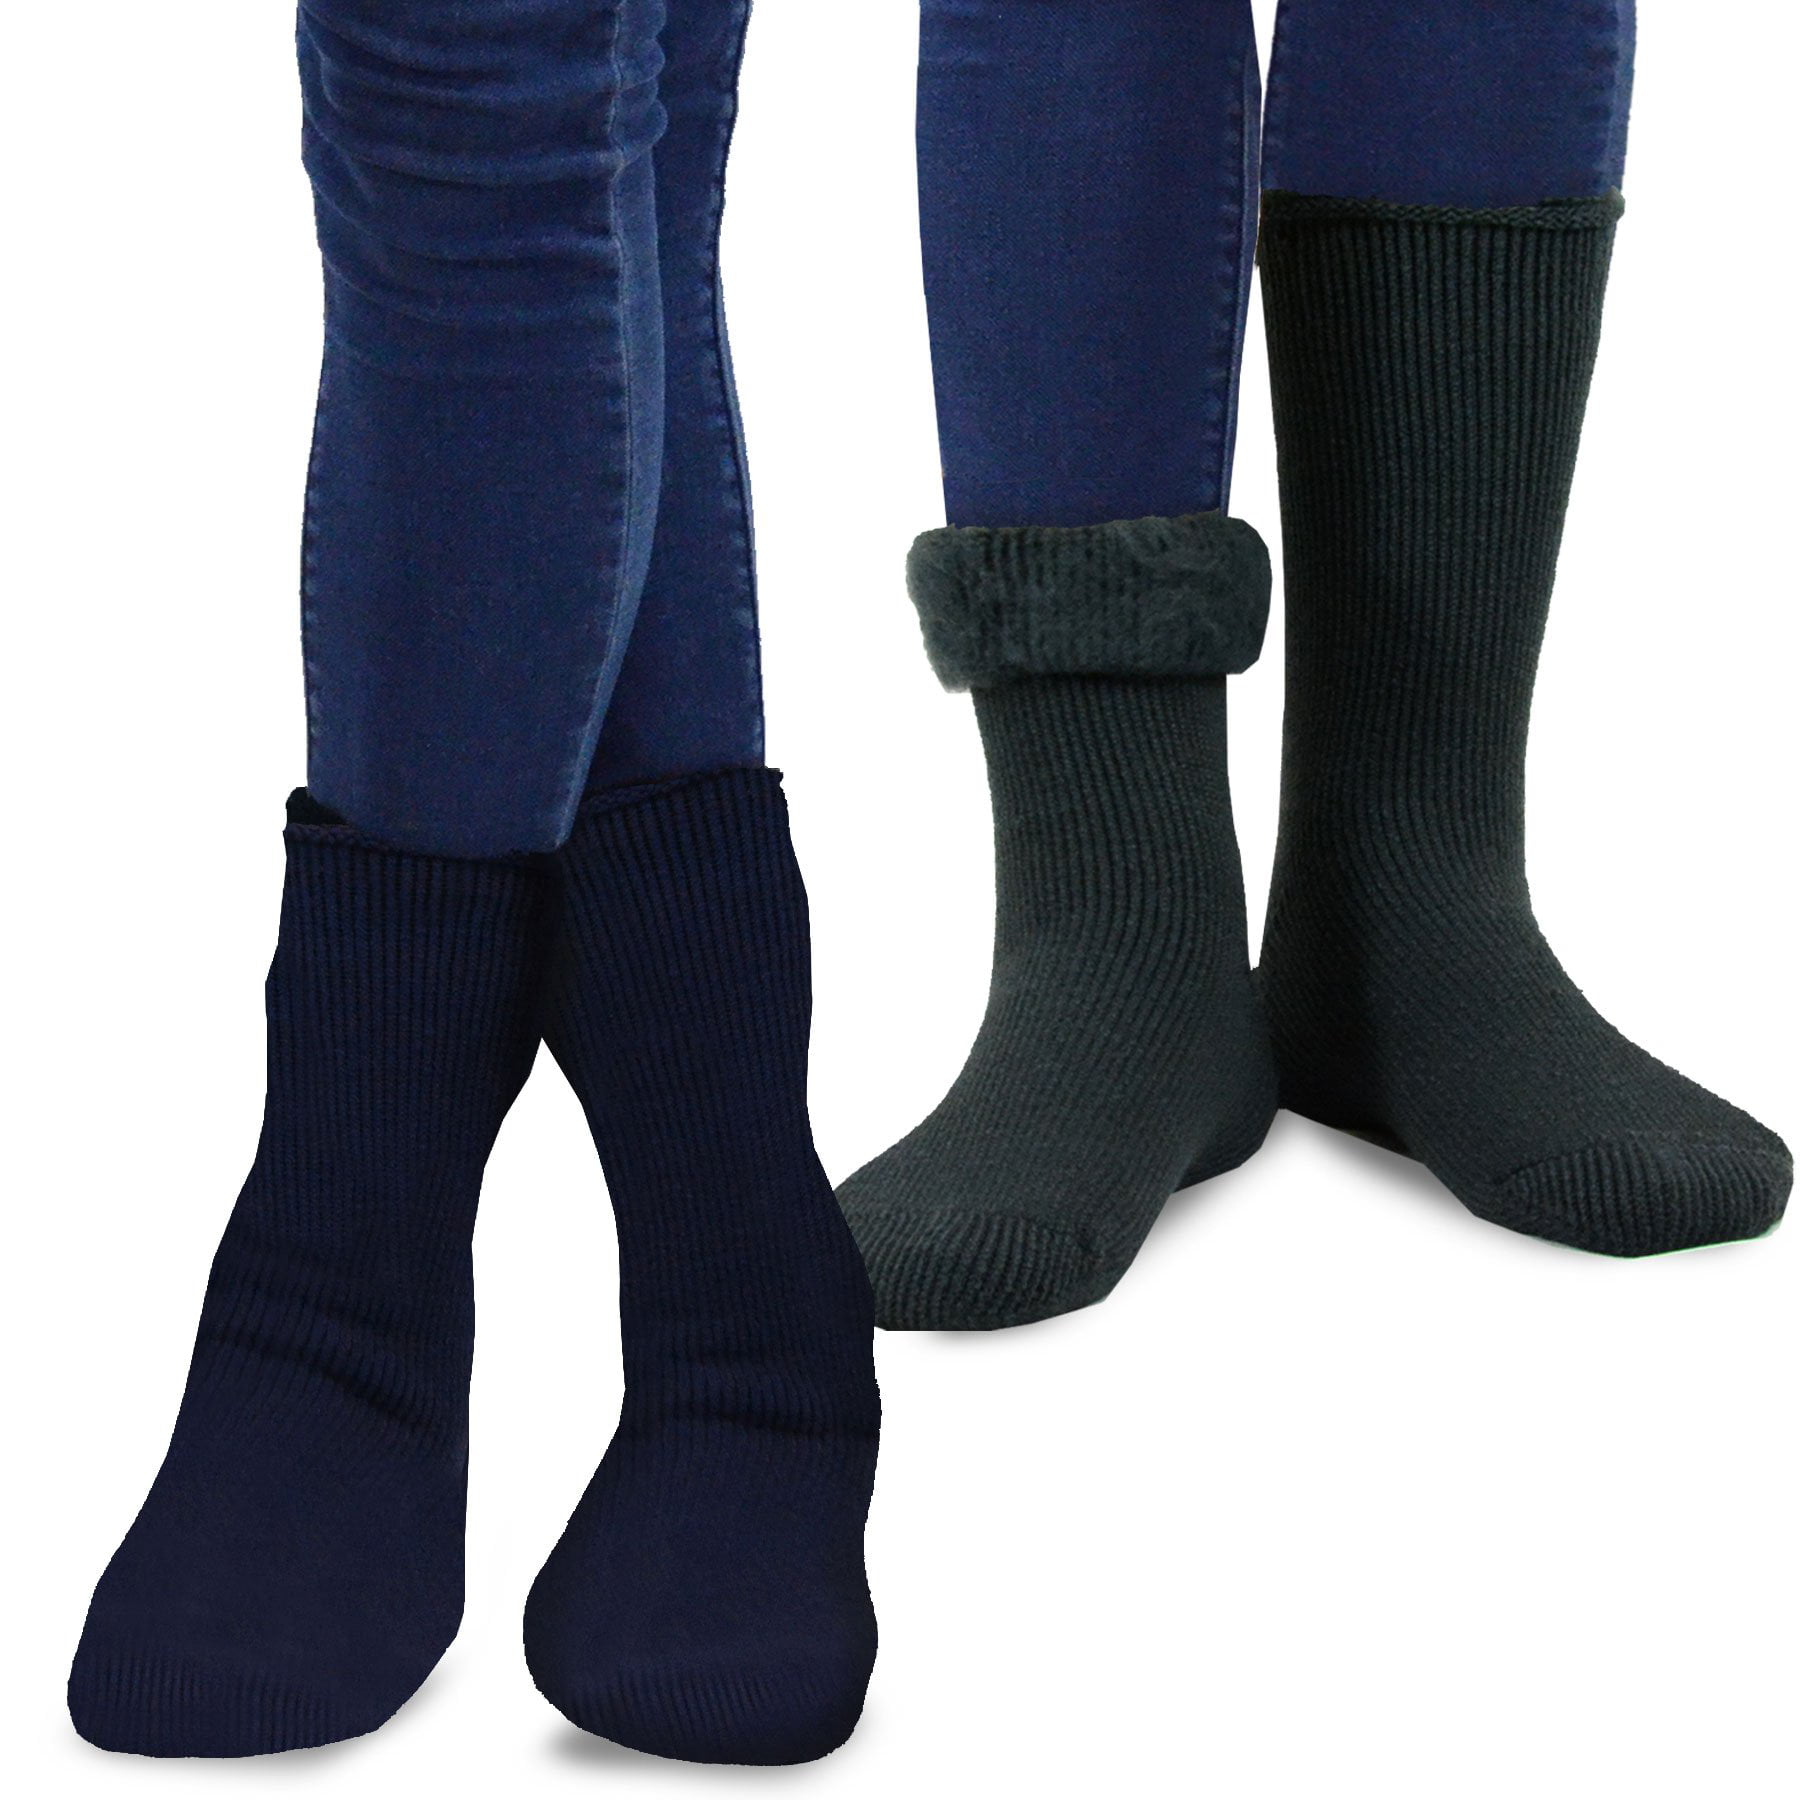 TeeHee Socks - TeeHee Super Warm Brushed Thermal Crew Socks 2 Pairs ...